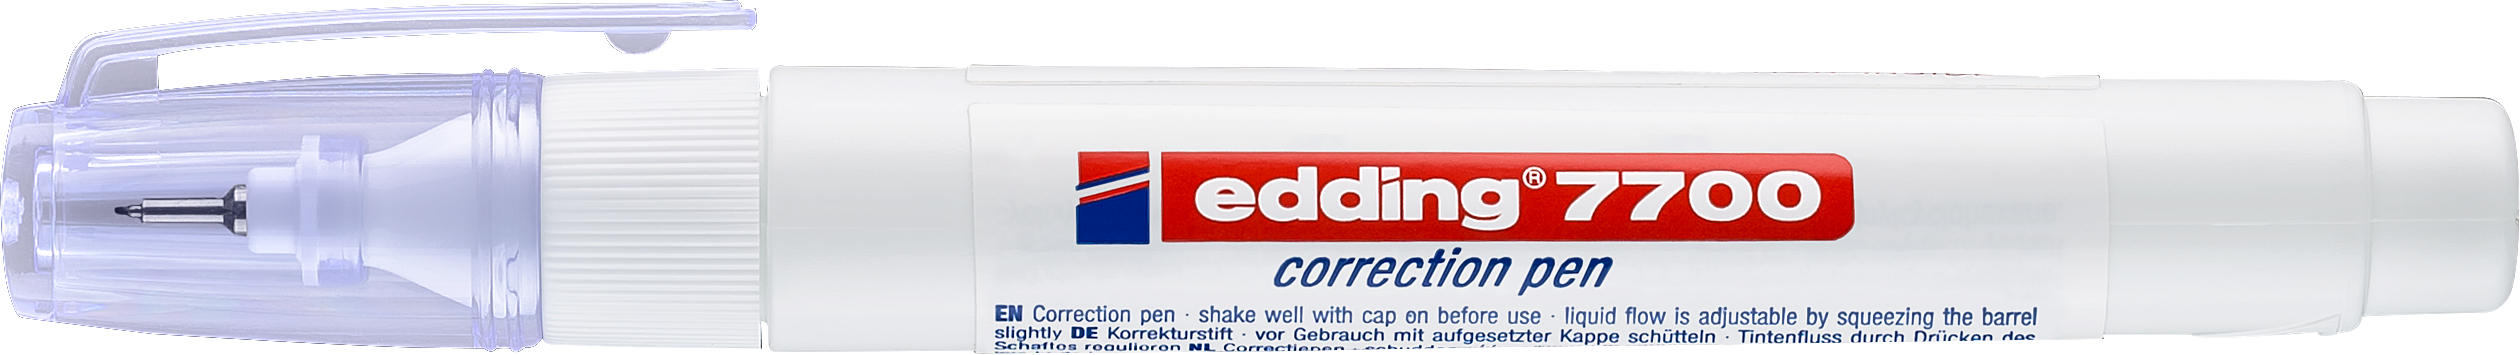 EDDING Correction Pen 1-2mm 7700 blanc blanc